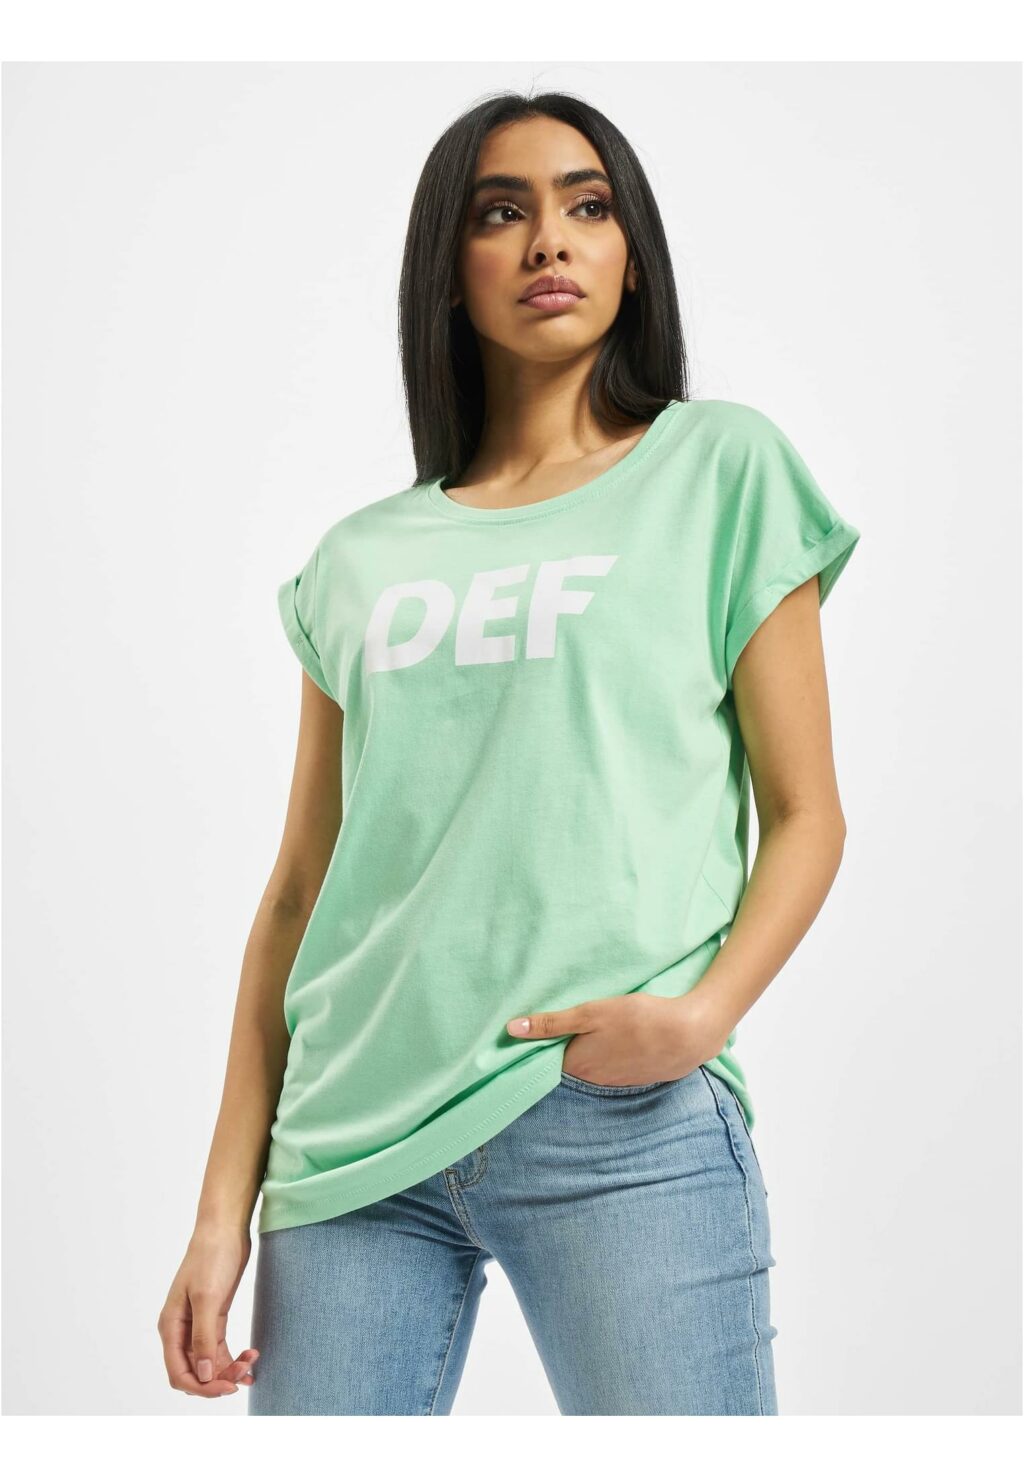 DEF Sizza T-Shirt mint DFTS056T